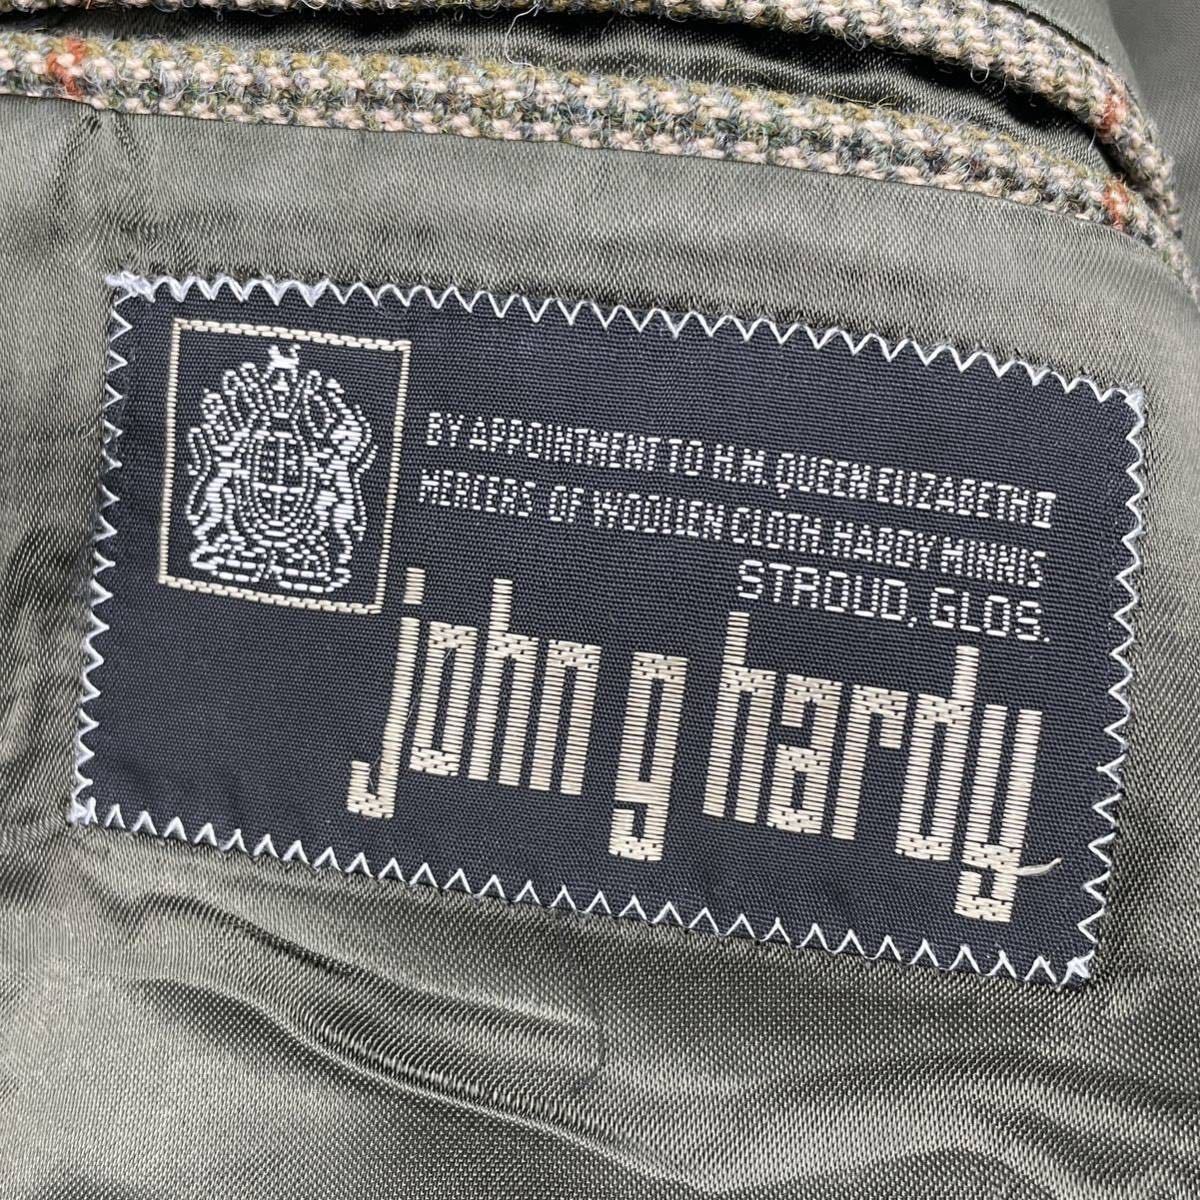 英国製◎John G Hardy ツイードジャケット 38S 細身なシルエット 阪急有楽町 StraySheepで購入 チェスターバリー 美品_画像7